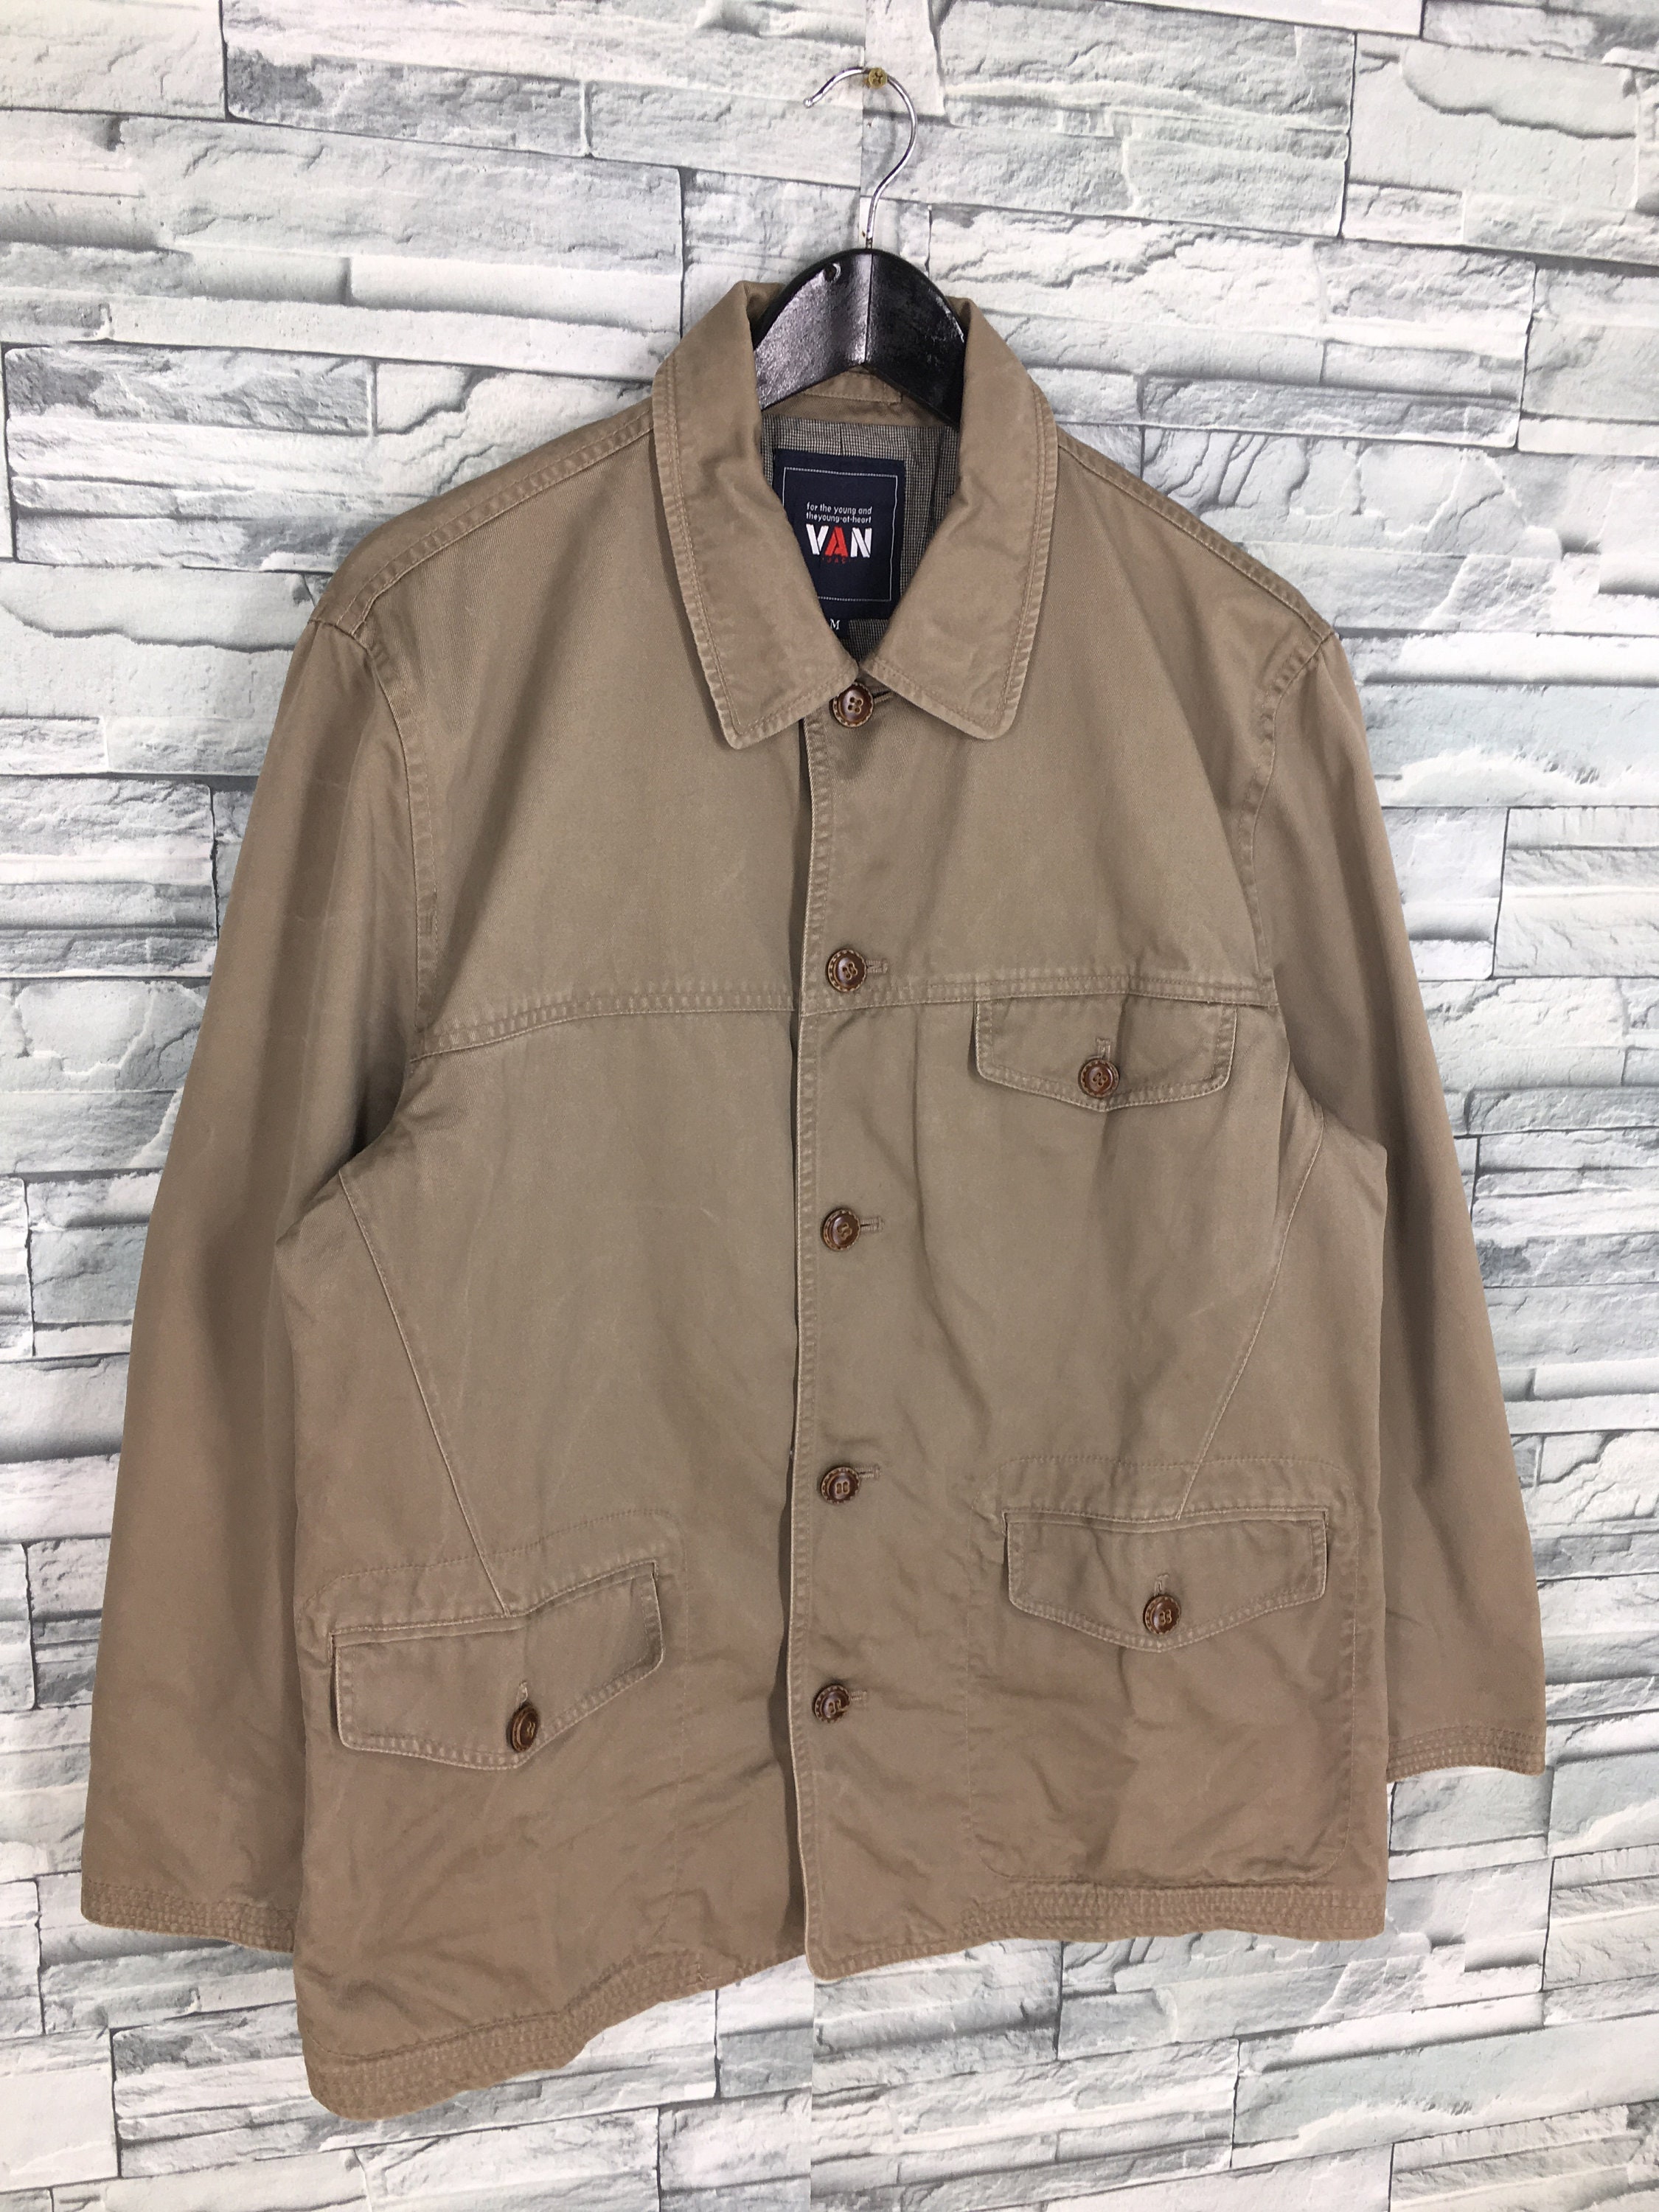 Vintage Van Jac Workers Denim Jacket Medium Workwear Japan - Etsy